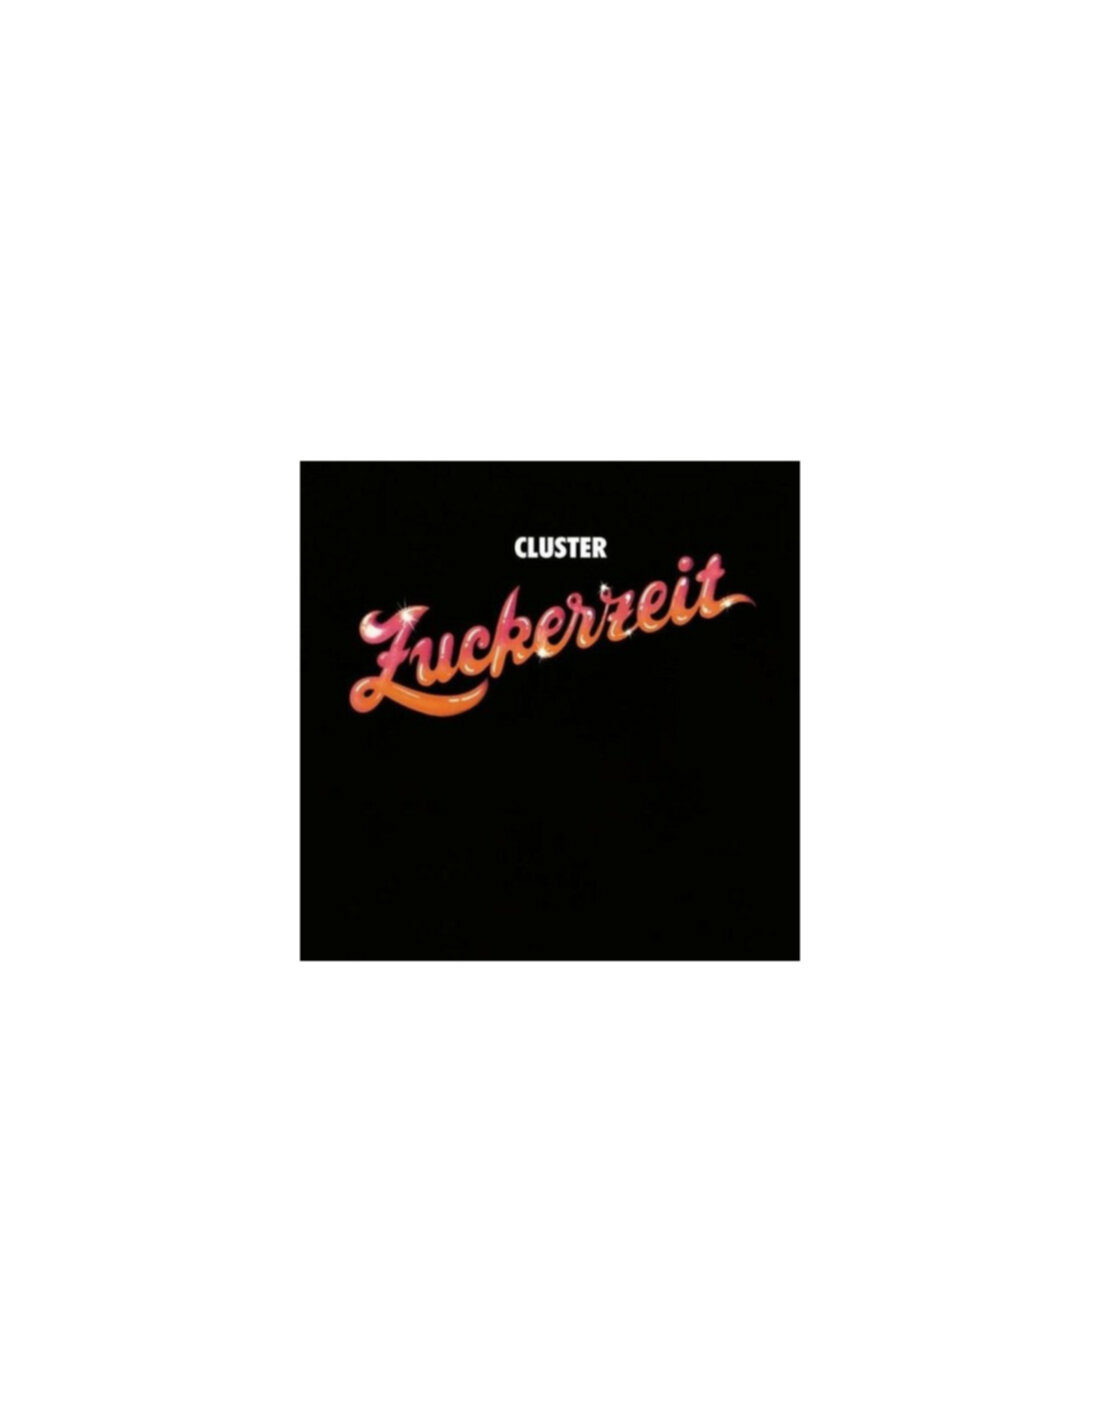 CLUSTER – ZUCKERZEIT 50 anniversary ltd vinyl LP